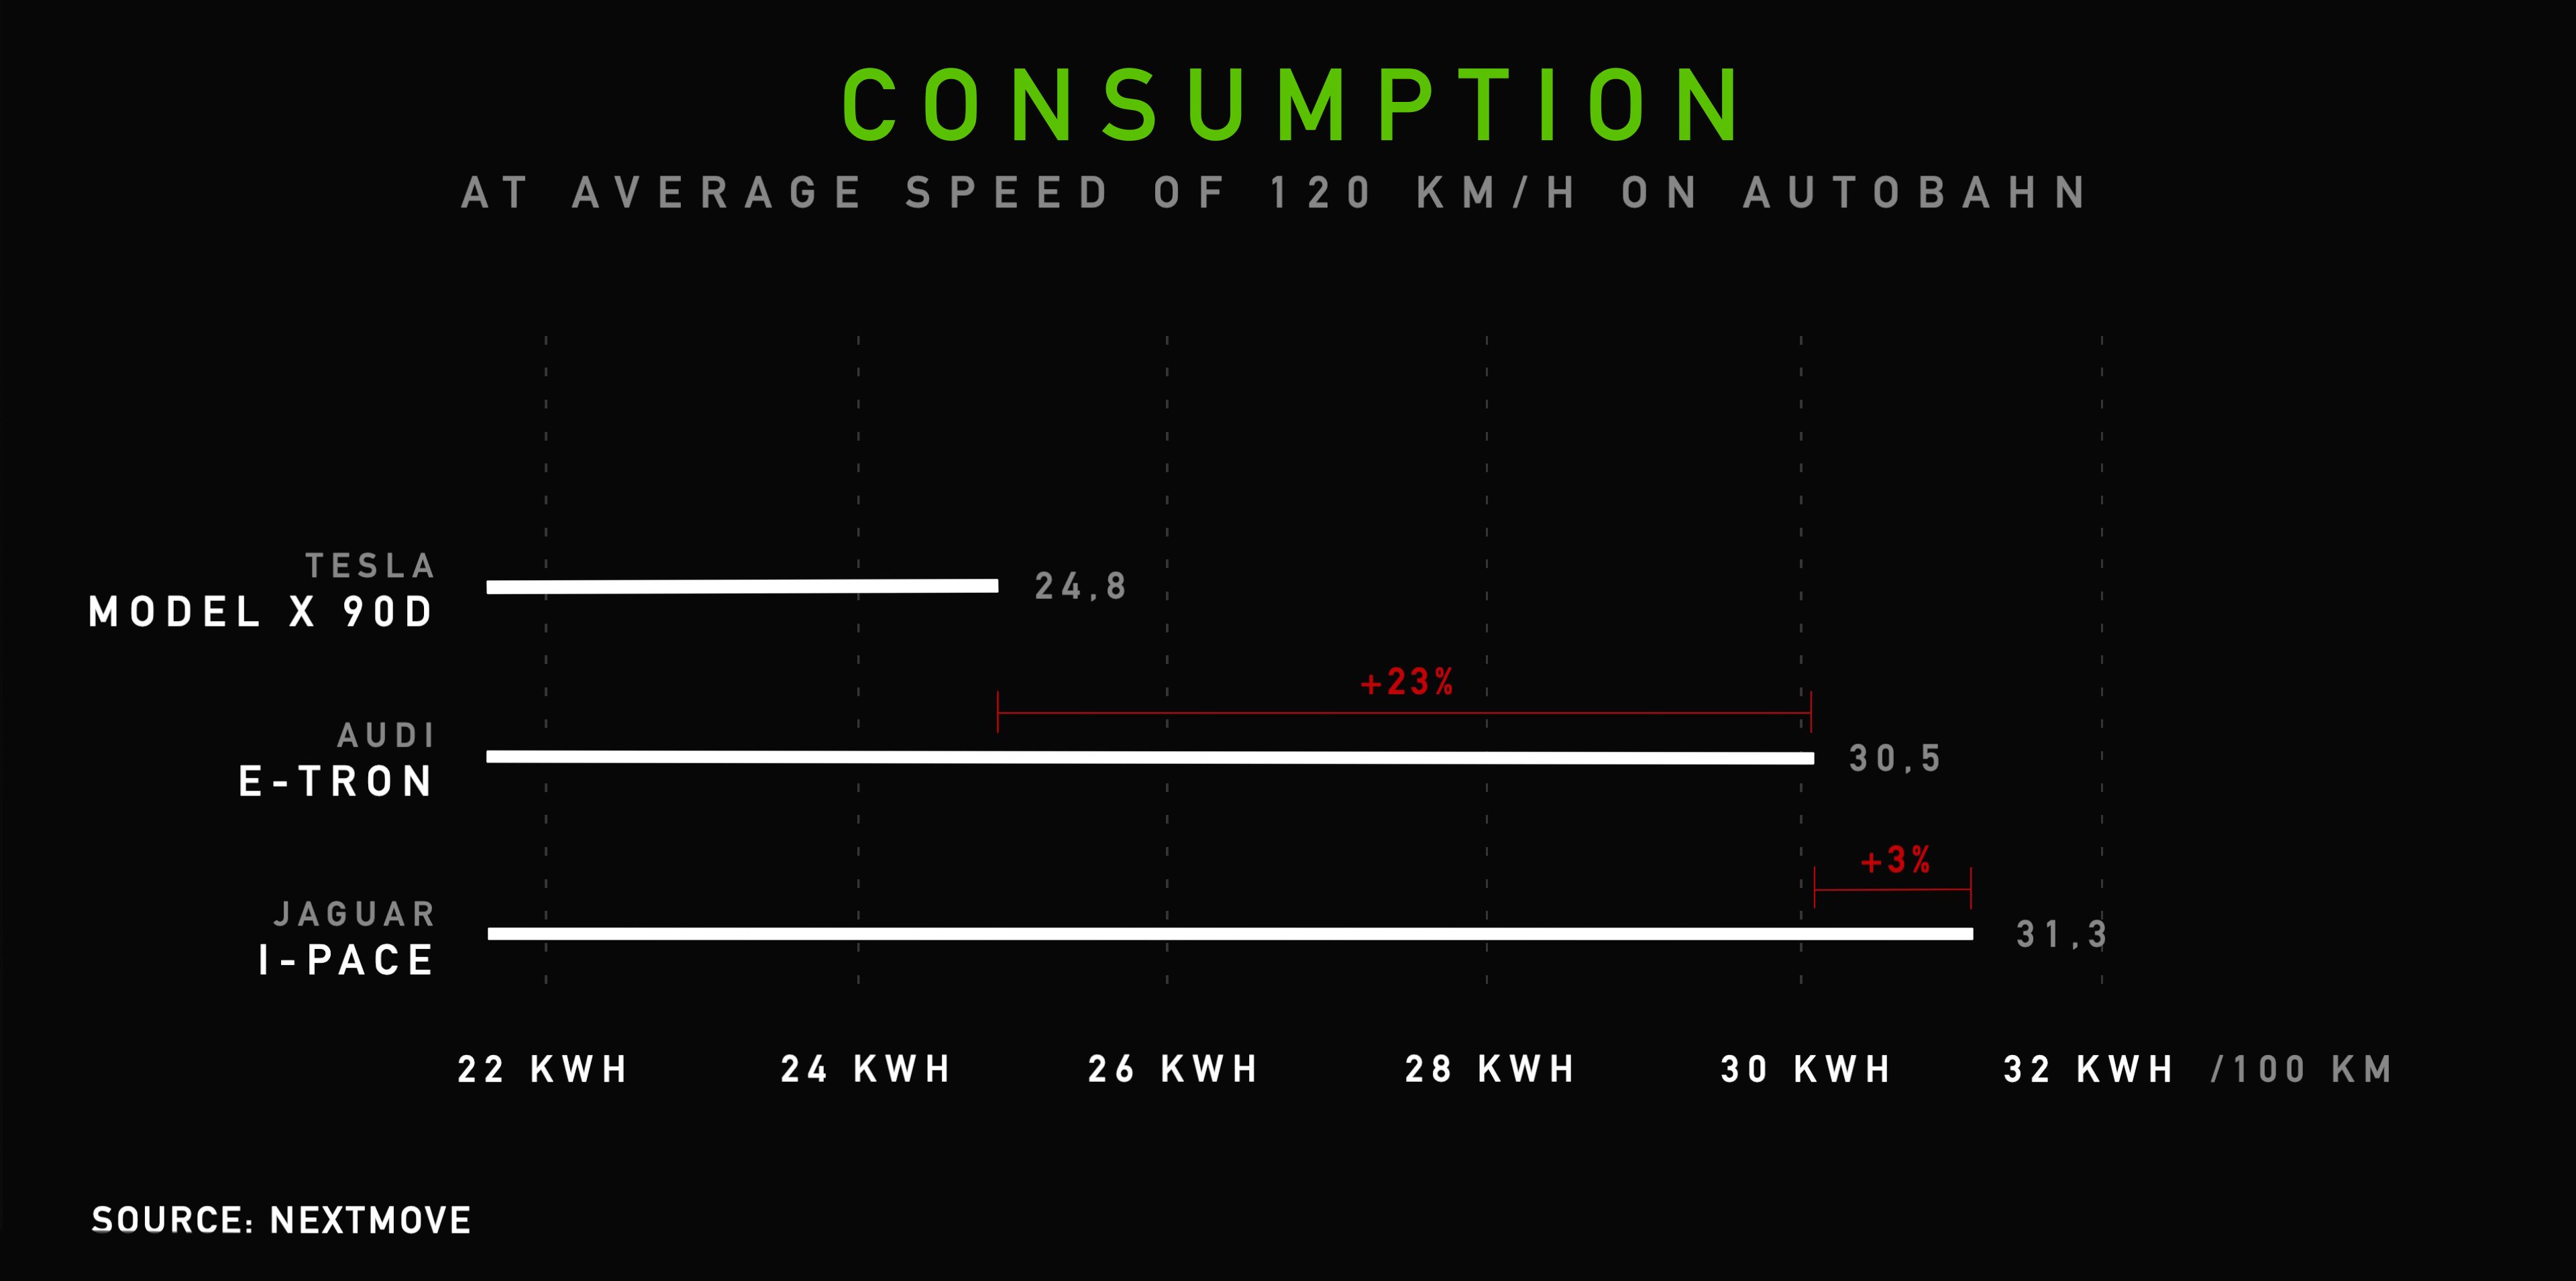 2_Consumption_EN-Audi-etron-Tesla-Model-X-Jaguar-I-PACE-Range-Consumption-Test-nextmove (1)